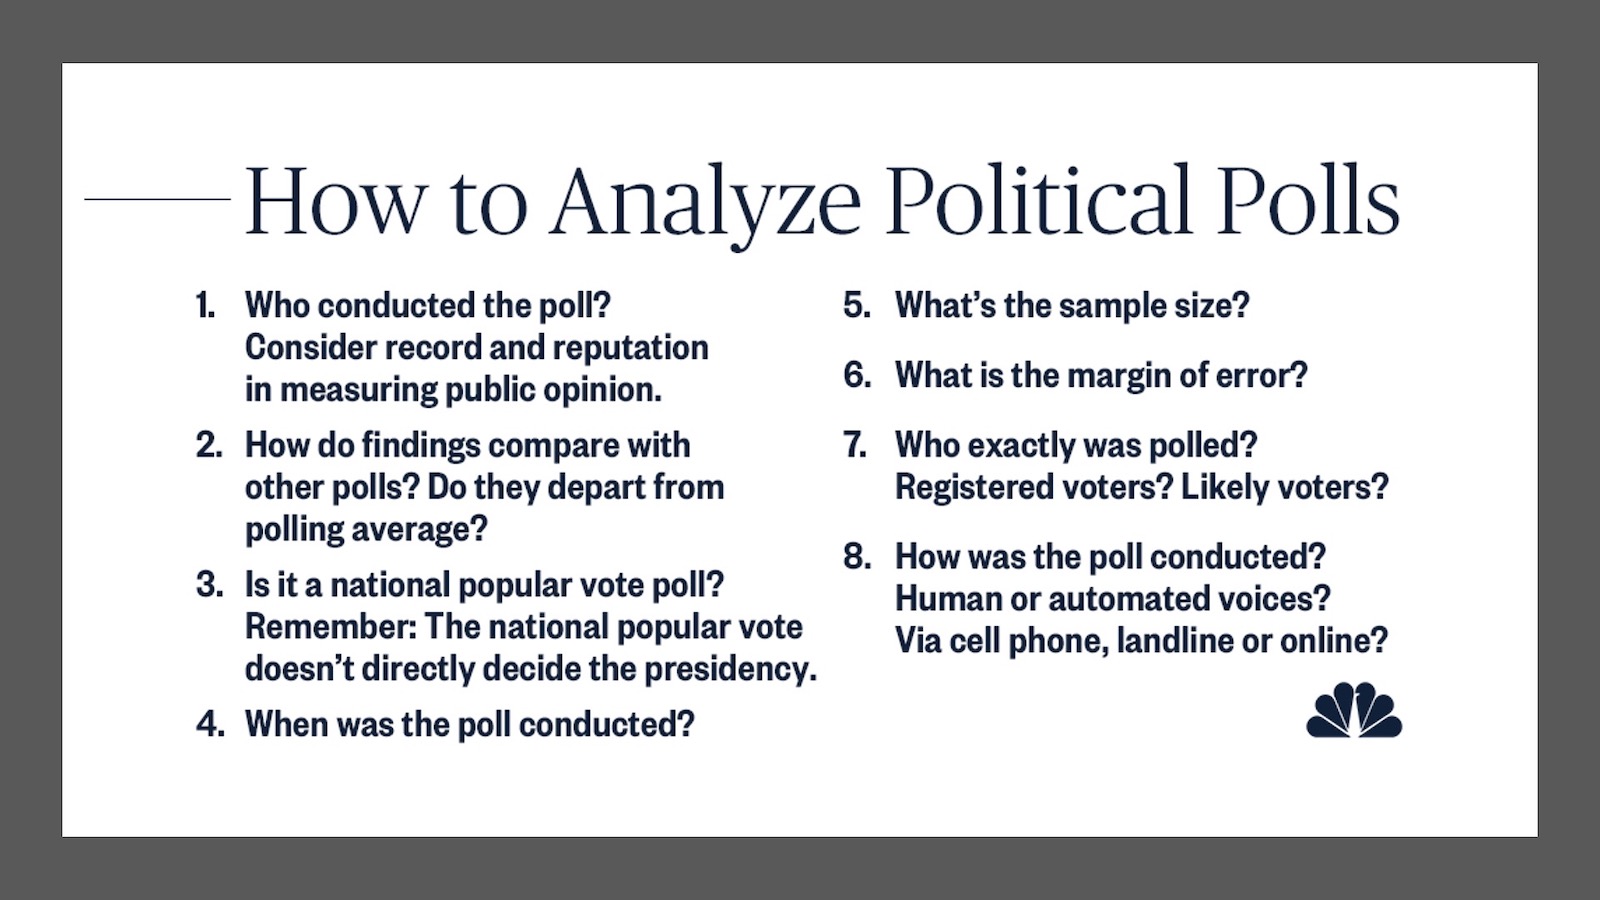 How to analyze political polls